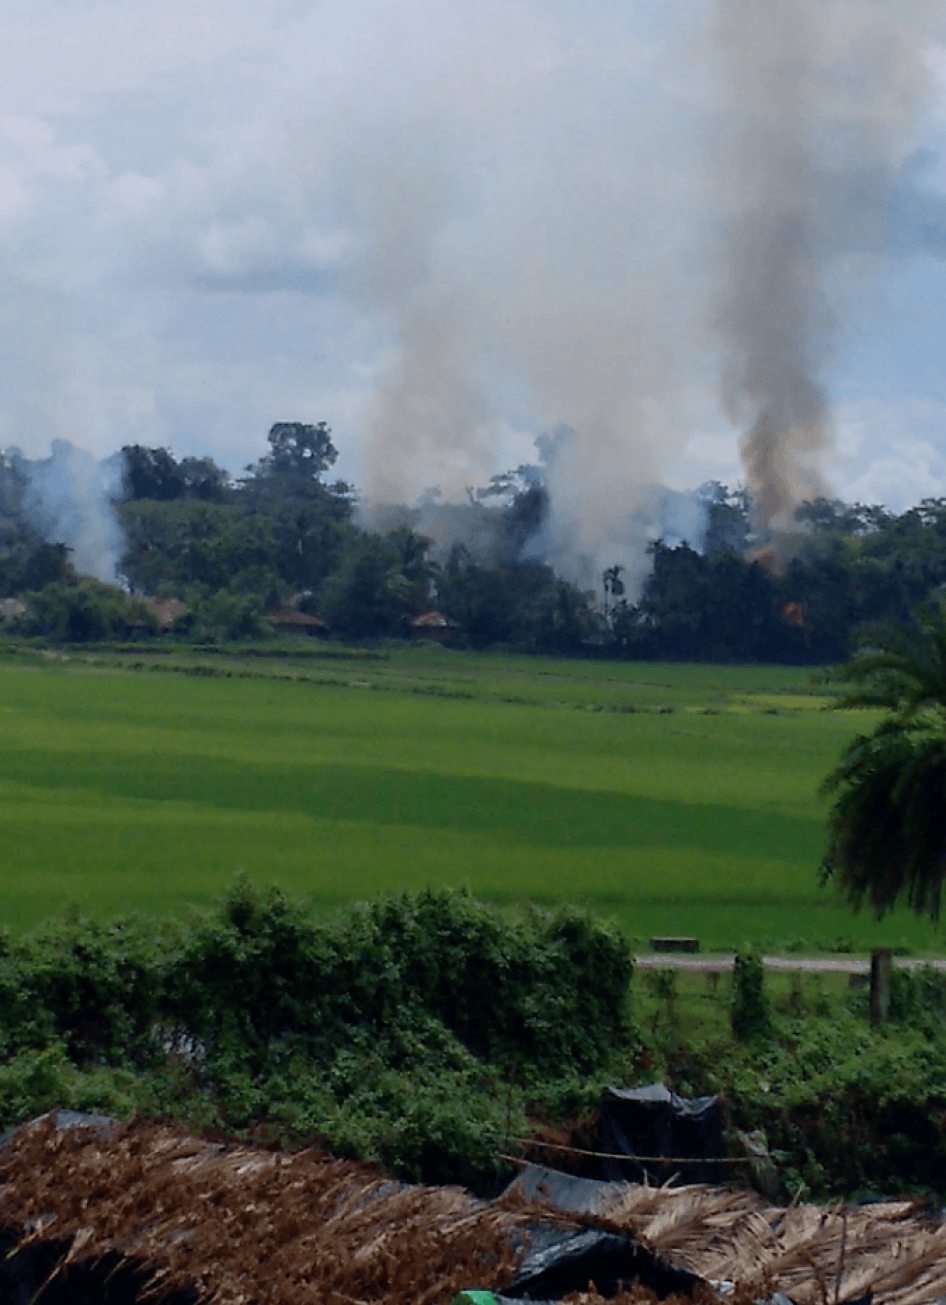 视频截图显示某受灾村落喷出火舌。